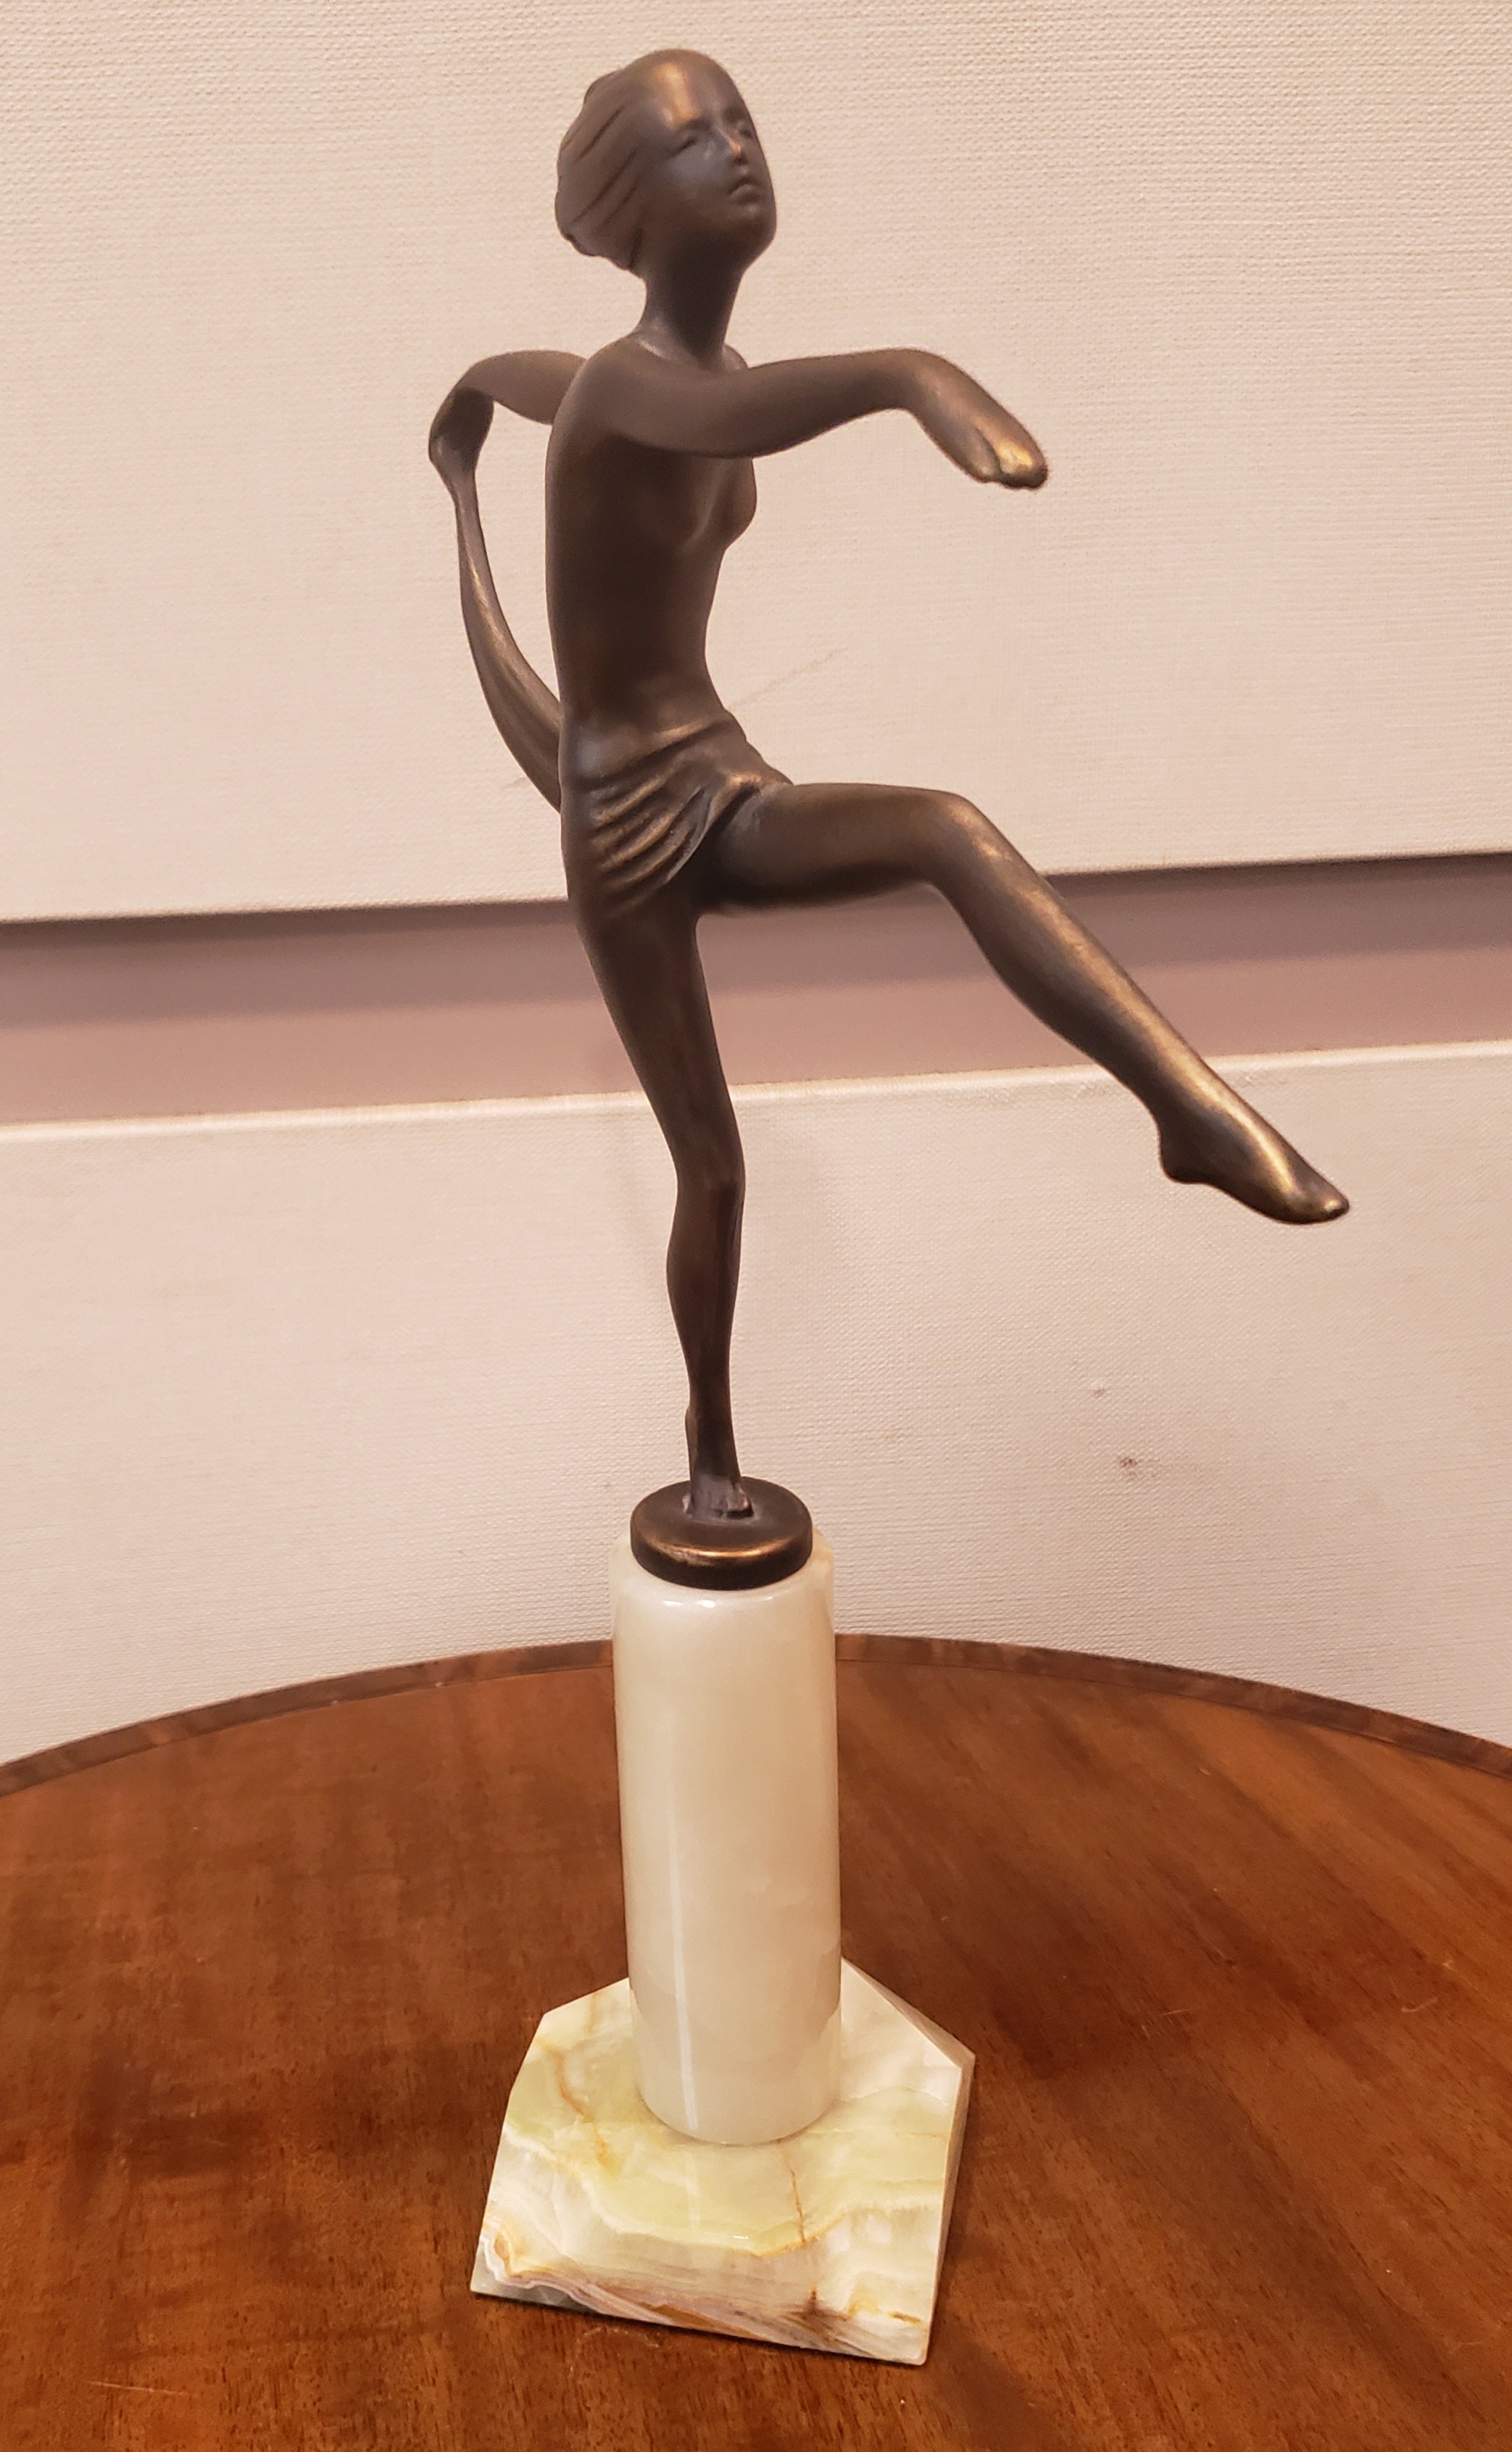 Eine attraktive, kalt bemalte Bronzefigur einer nackten Tänzerin des 20. Jahrhunderts, die mit ausgestreckten Armen in eleganter Pose den Saum des um ihre Taille drapierten Schals hält und ein Bein vor sich ausstreckt. Die Skulptur weist eine